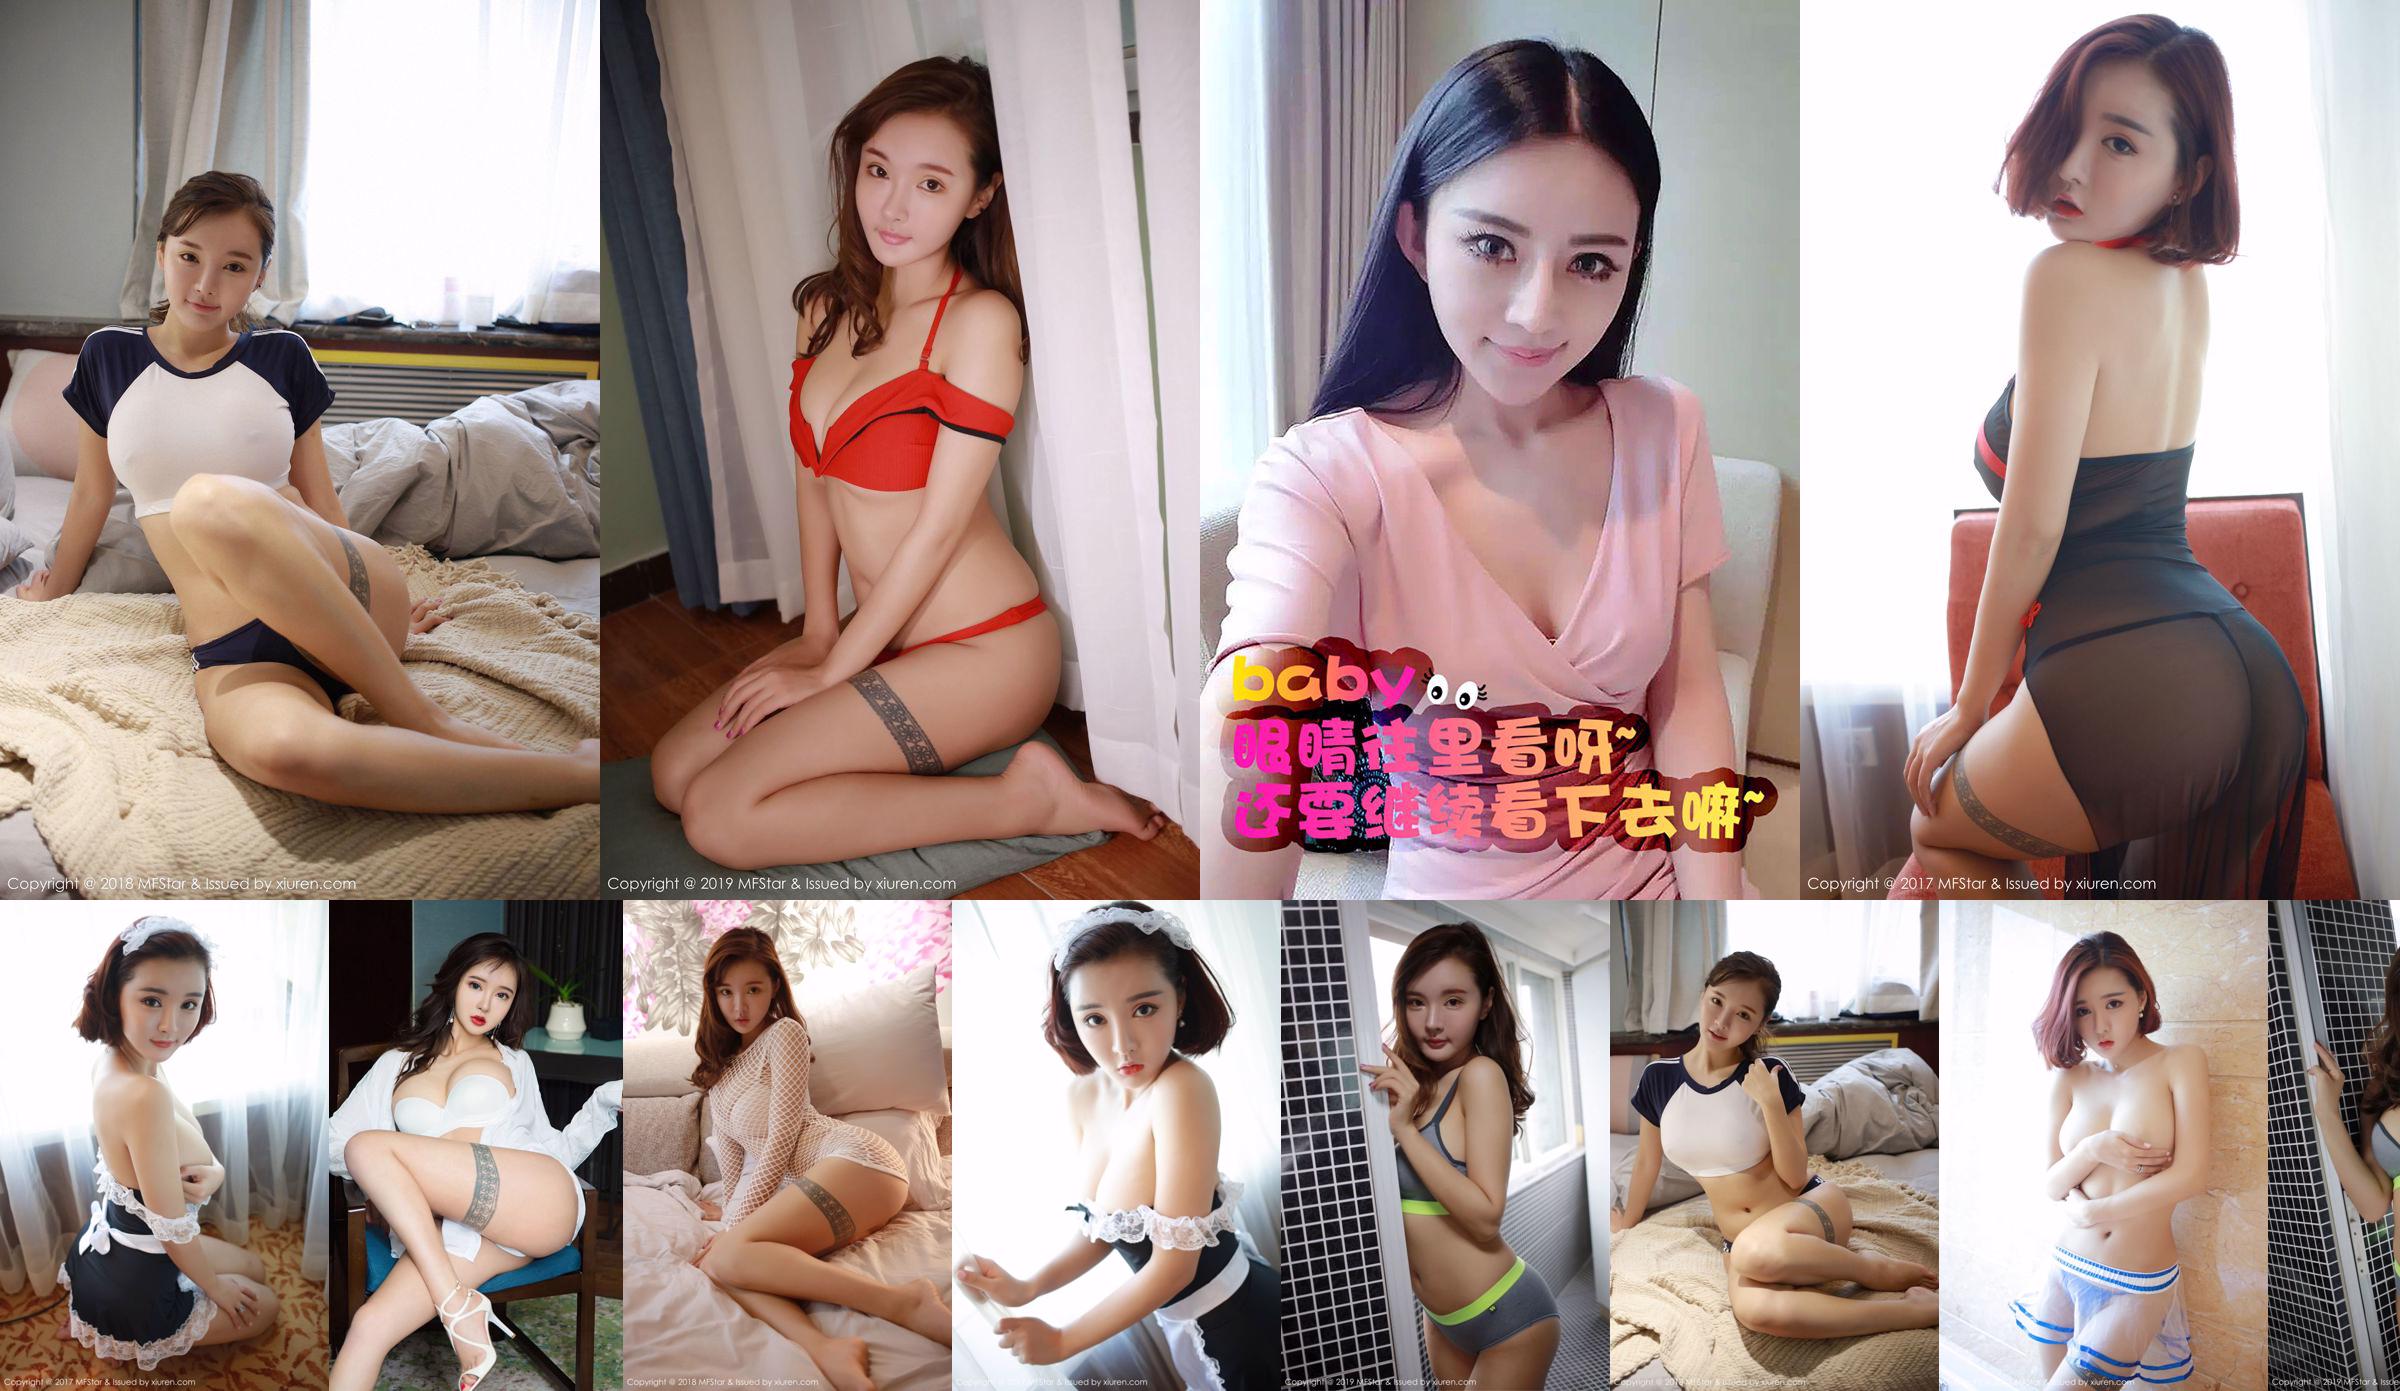 Jia Jia "Vẻ đẹp của điện một trăm nghìn vôn" [Love Ugirls] No.075 No.fbf2d3 Trang 7